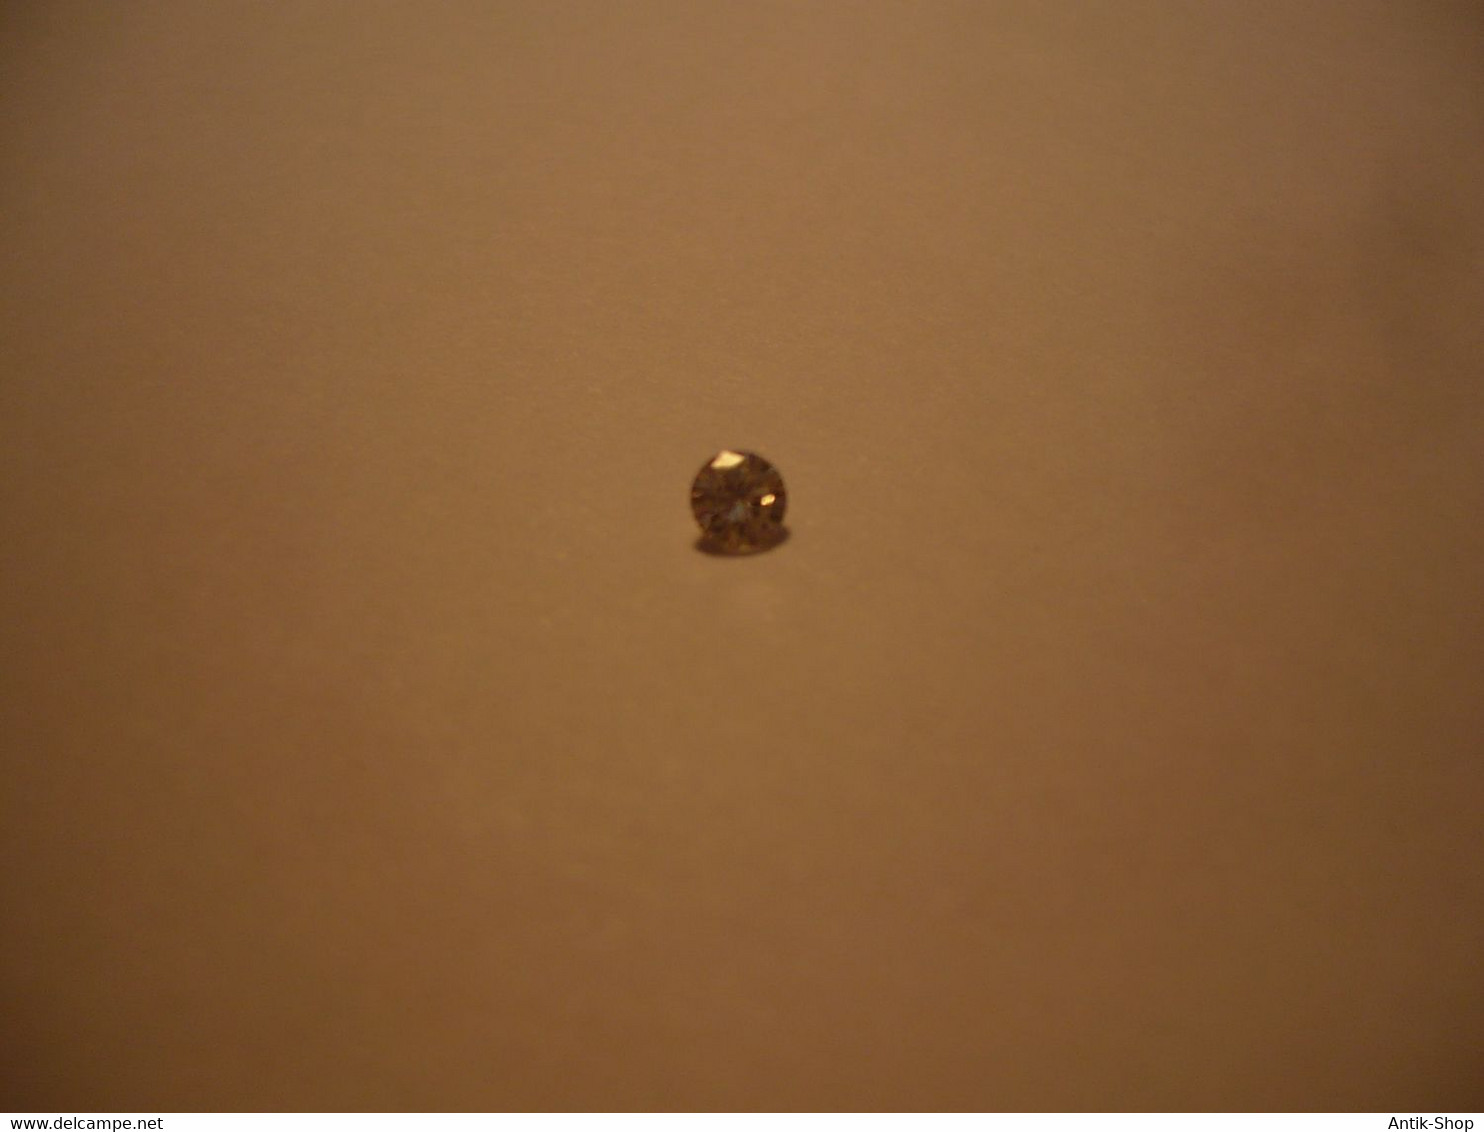 Brillant/Diamant - in Kapsel (716) Preis reduziert